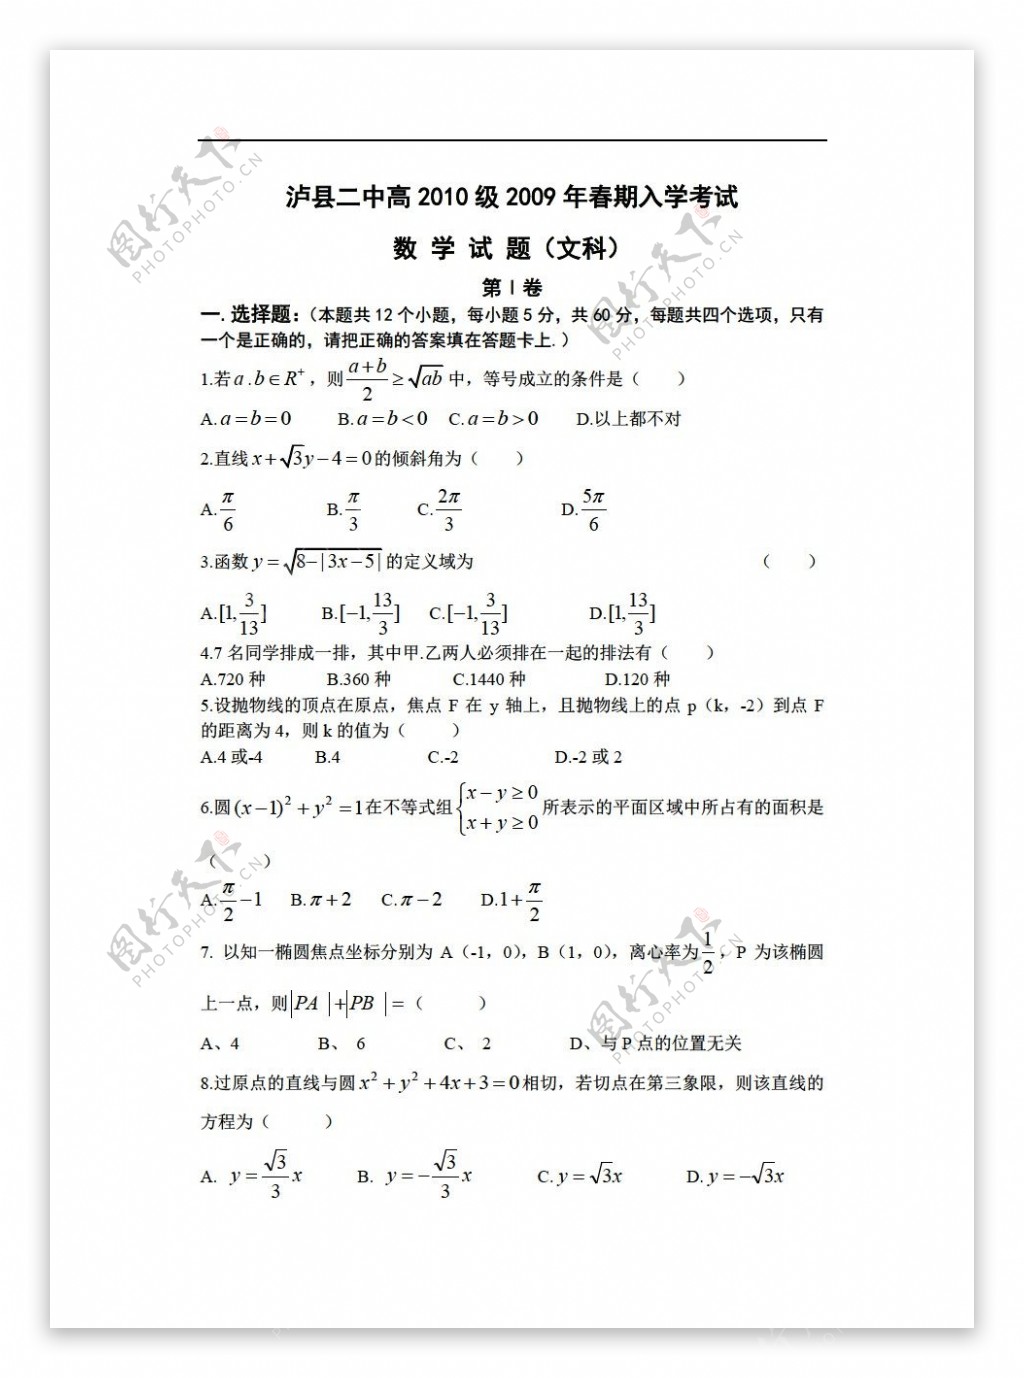 数学人教版泸县二中高2010级春期入学考试文科